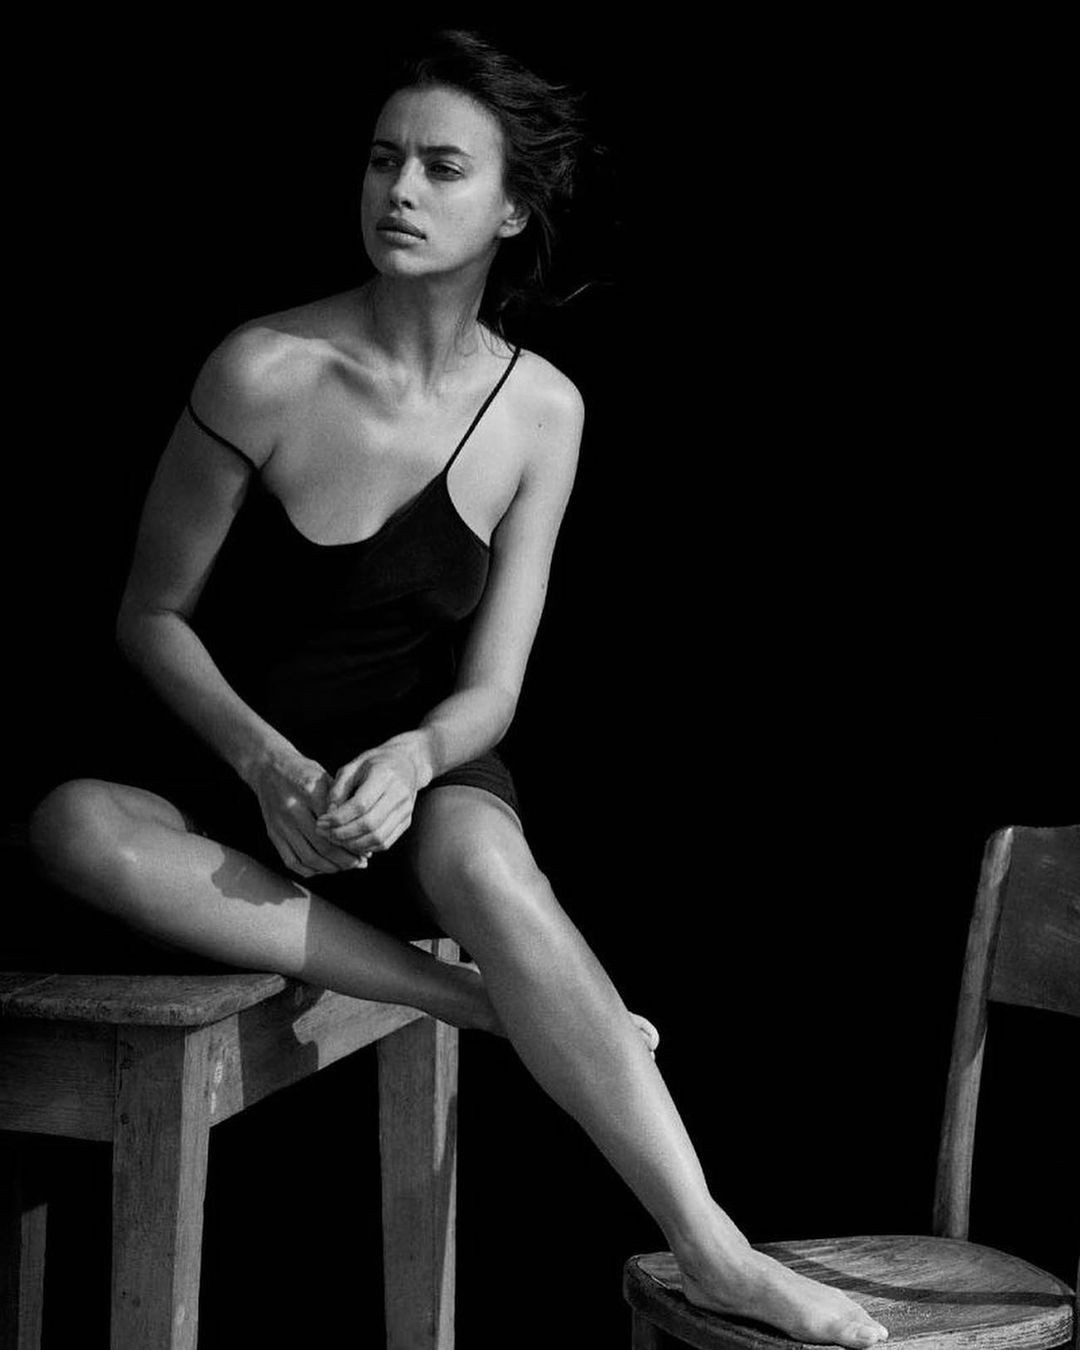 Irirna Shayk bán nude, diện quần tắm với boots giữa nắng hè gay gắt - 6